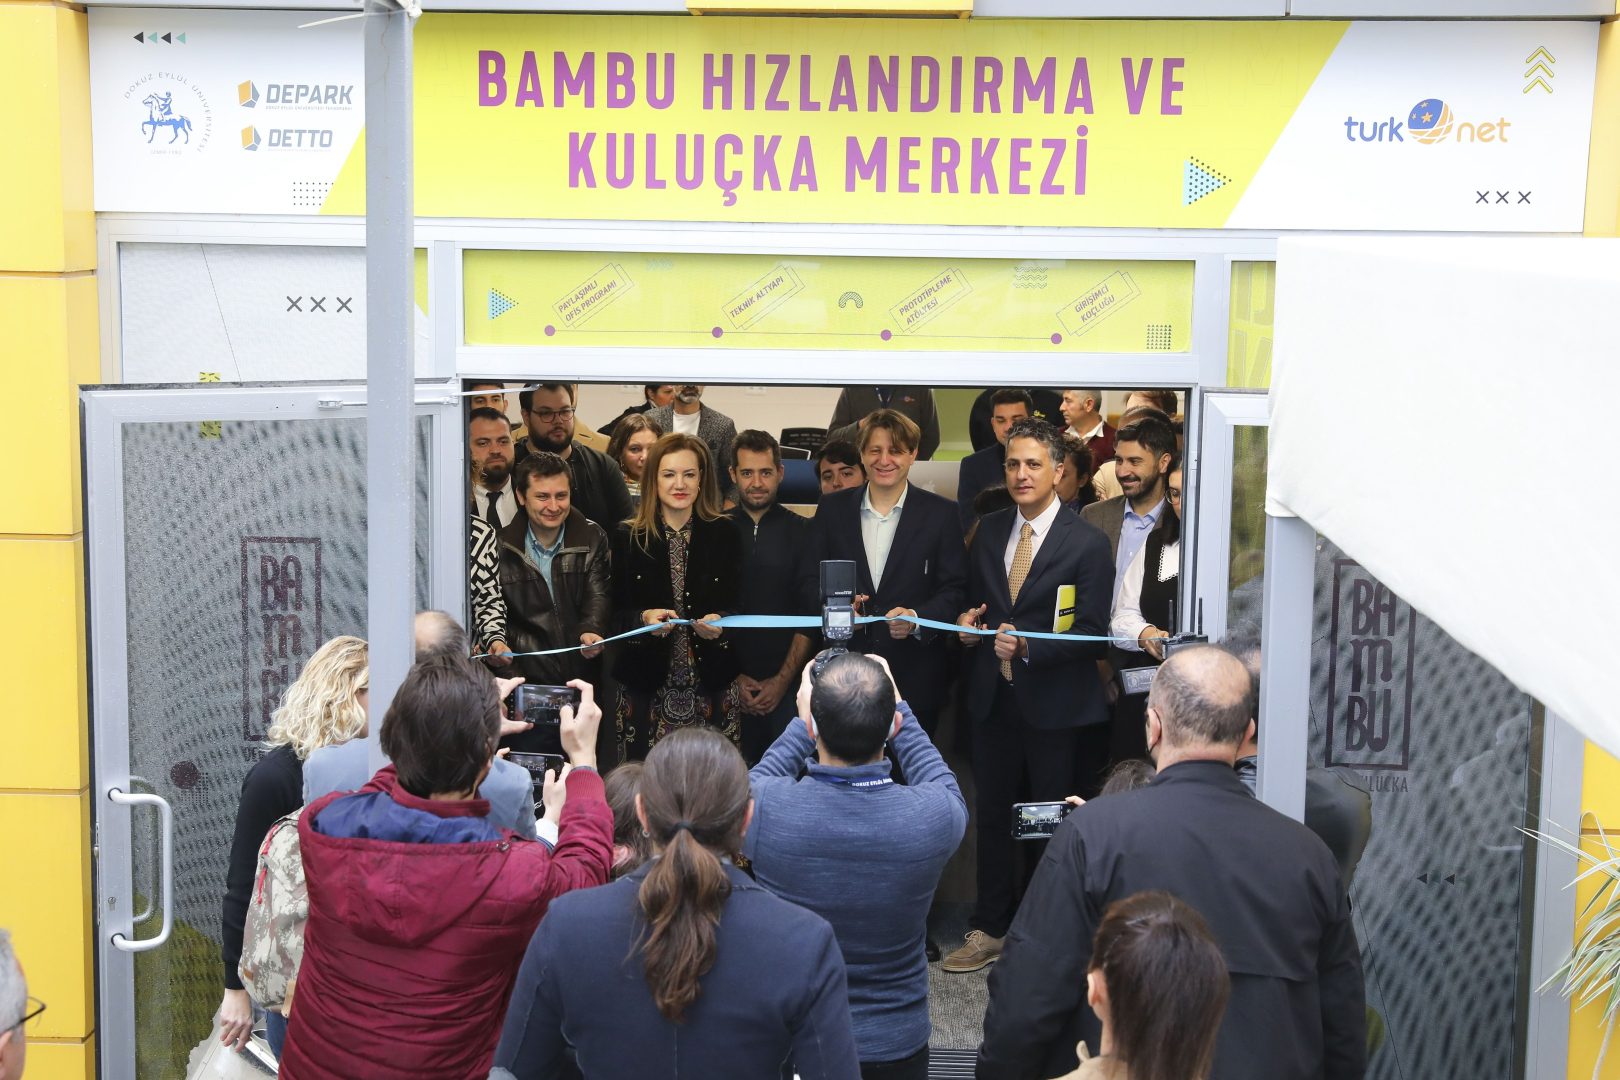 DEÜ DEPARK Bambu Kuluçka Merkezi TurkNet Desteği ile Yenilendi